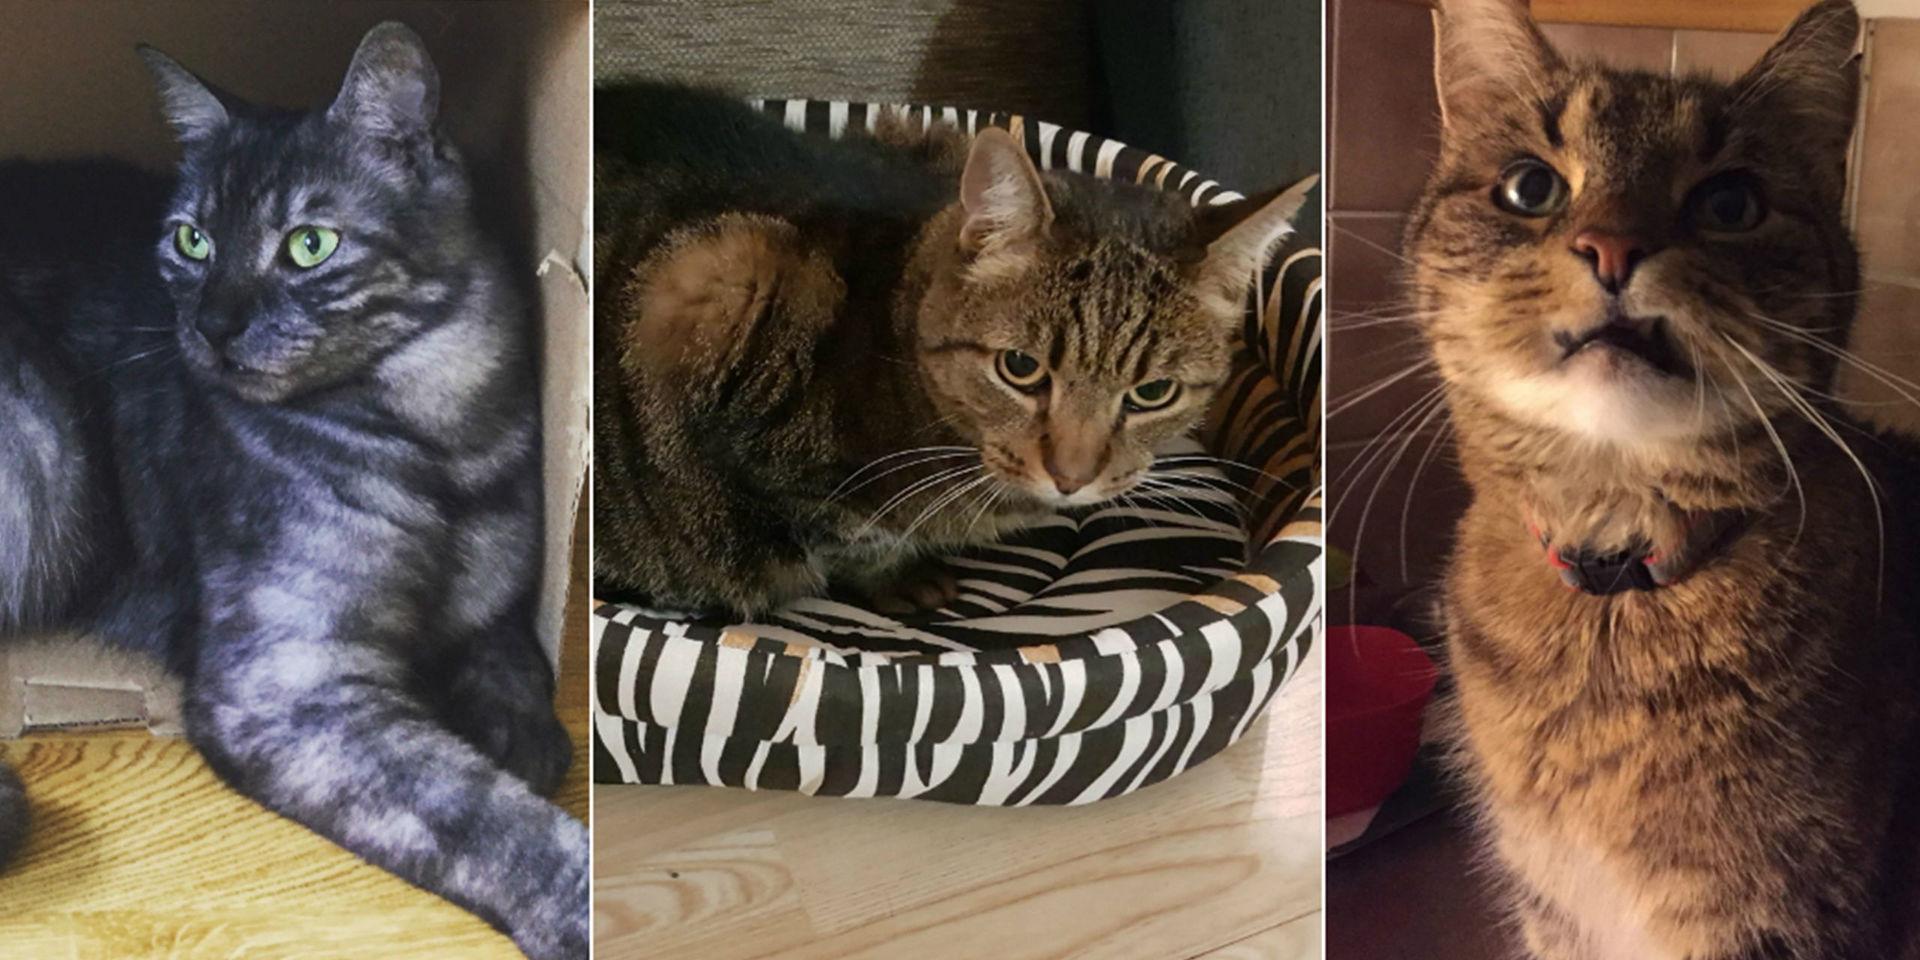 På två dagar försvann tre katter i närheten av Slätta damm. En av dem hittades död i en papperskorg i området. De andra två – och ytterligare en handfull – saknas fortfarande.